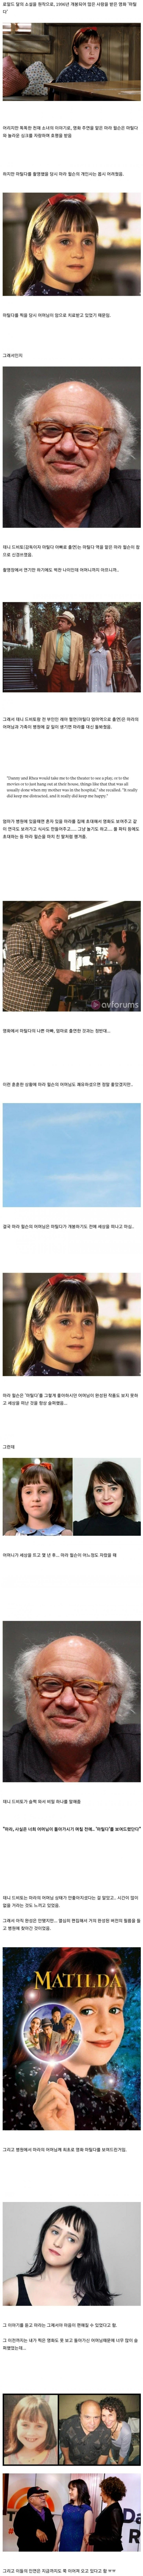 썸네일-영화 마틸다의 주연 배우와 숨겨진 비밀-이미지